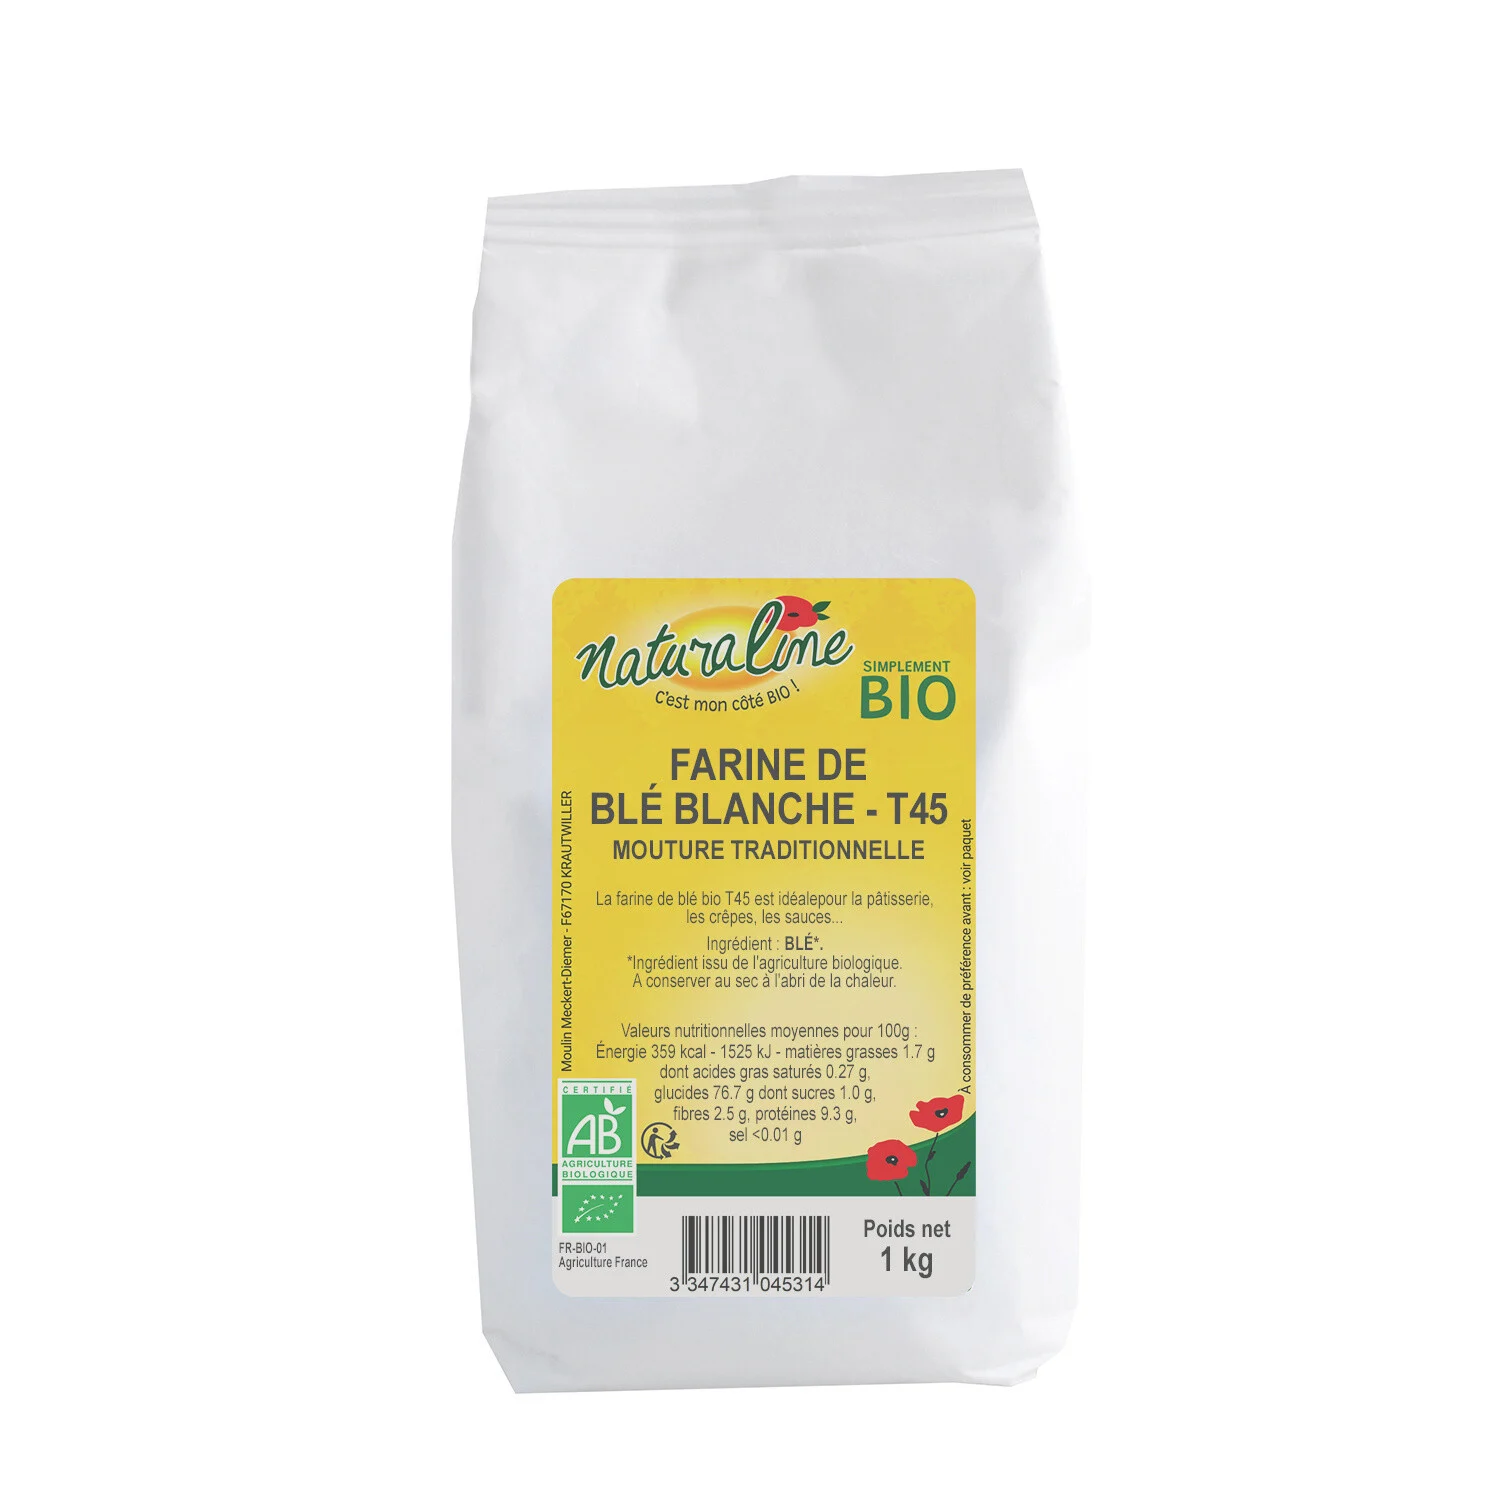 Farine De Blé T45 Bio 1kg - Naturaline